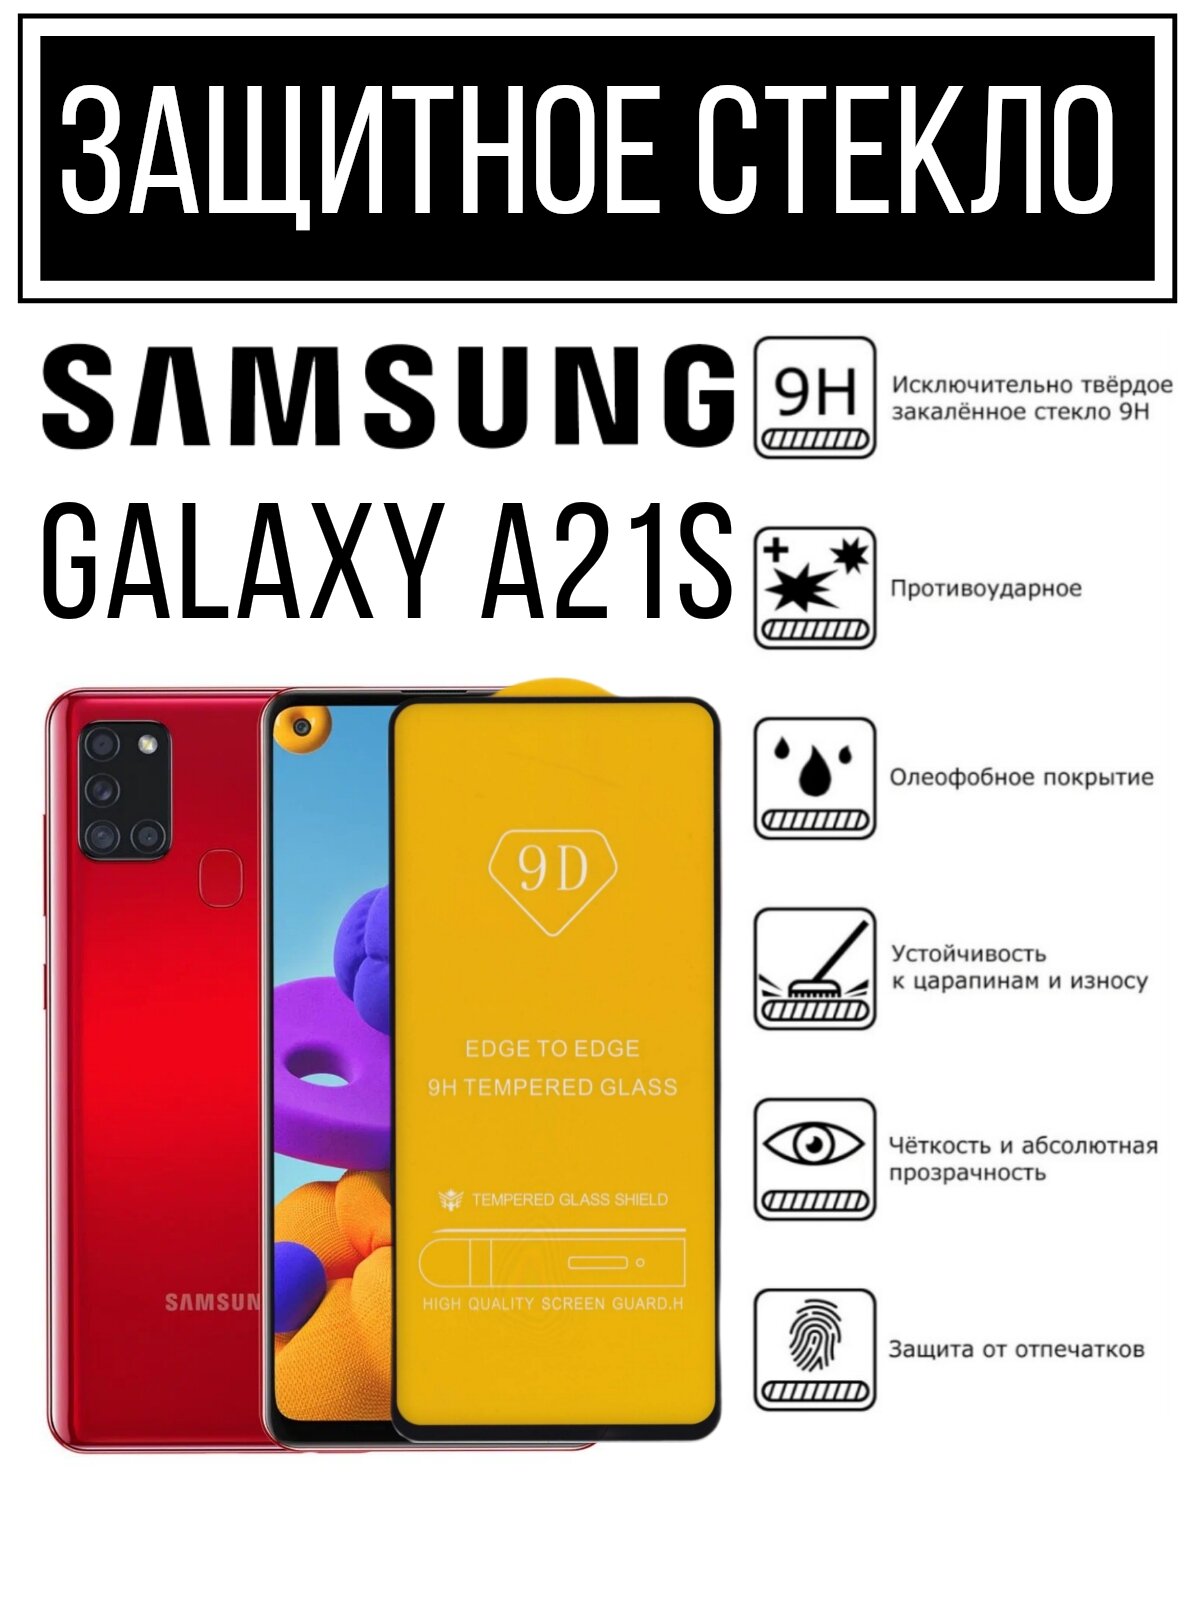 Противоударное закалённое защитное стекло для смартфонов Samsung Galaxy A21S / Самсунг Галакси А21С